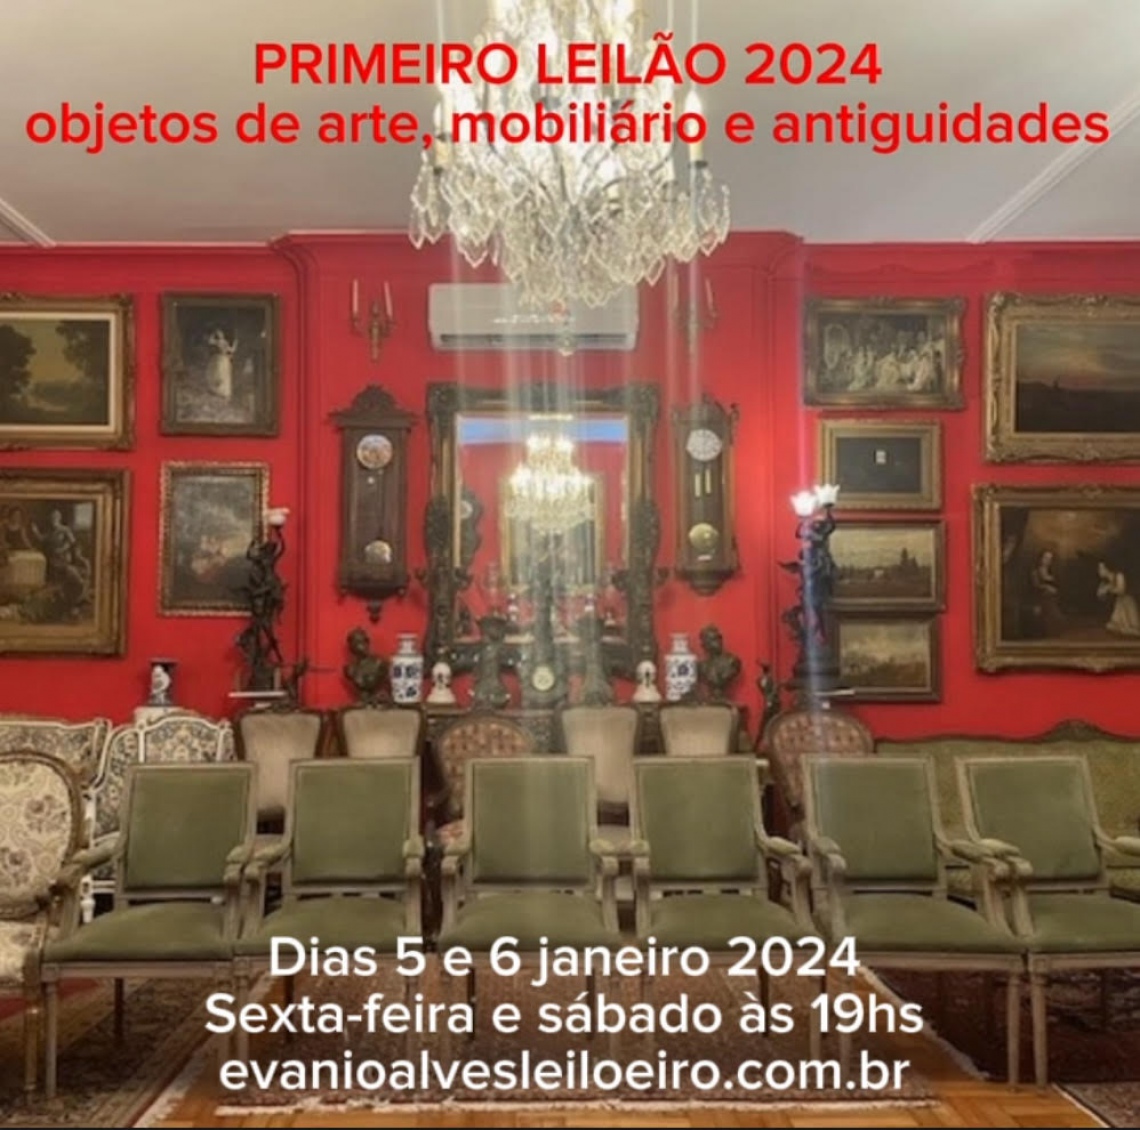 PRIMEIRO LEILÃO DE 2024 OBJETOS DE ARTE, MOBILIÁRIO E ANTIGUIDADES